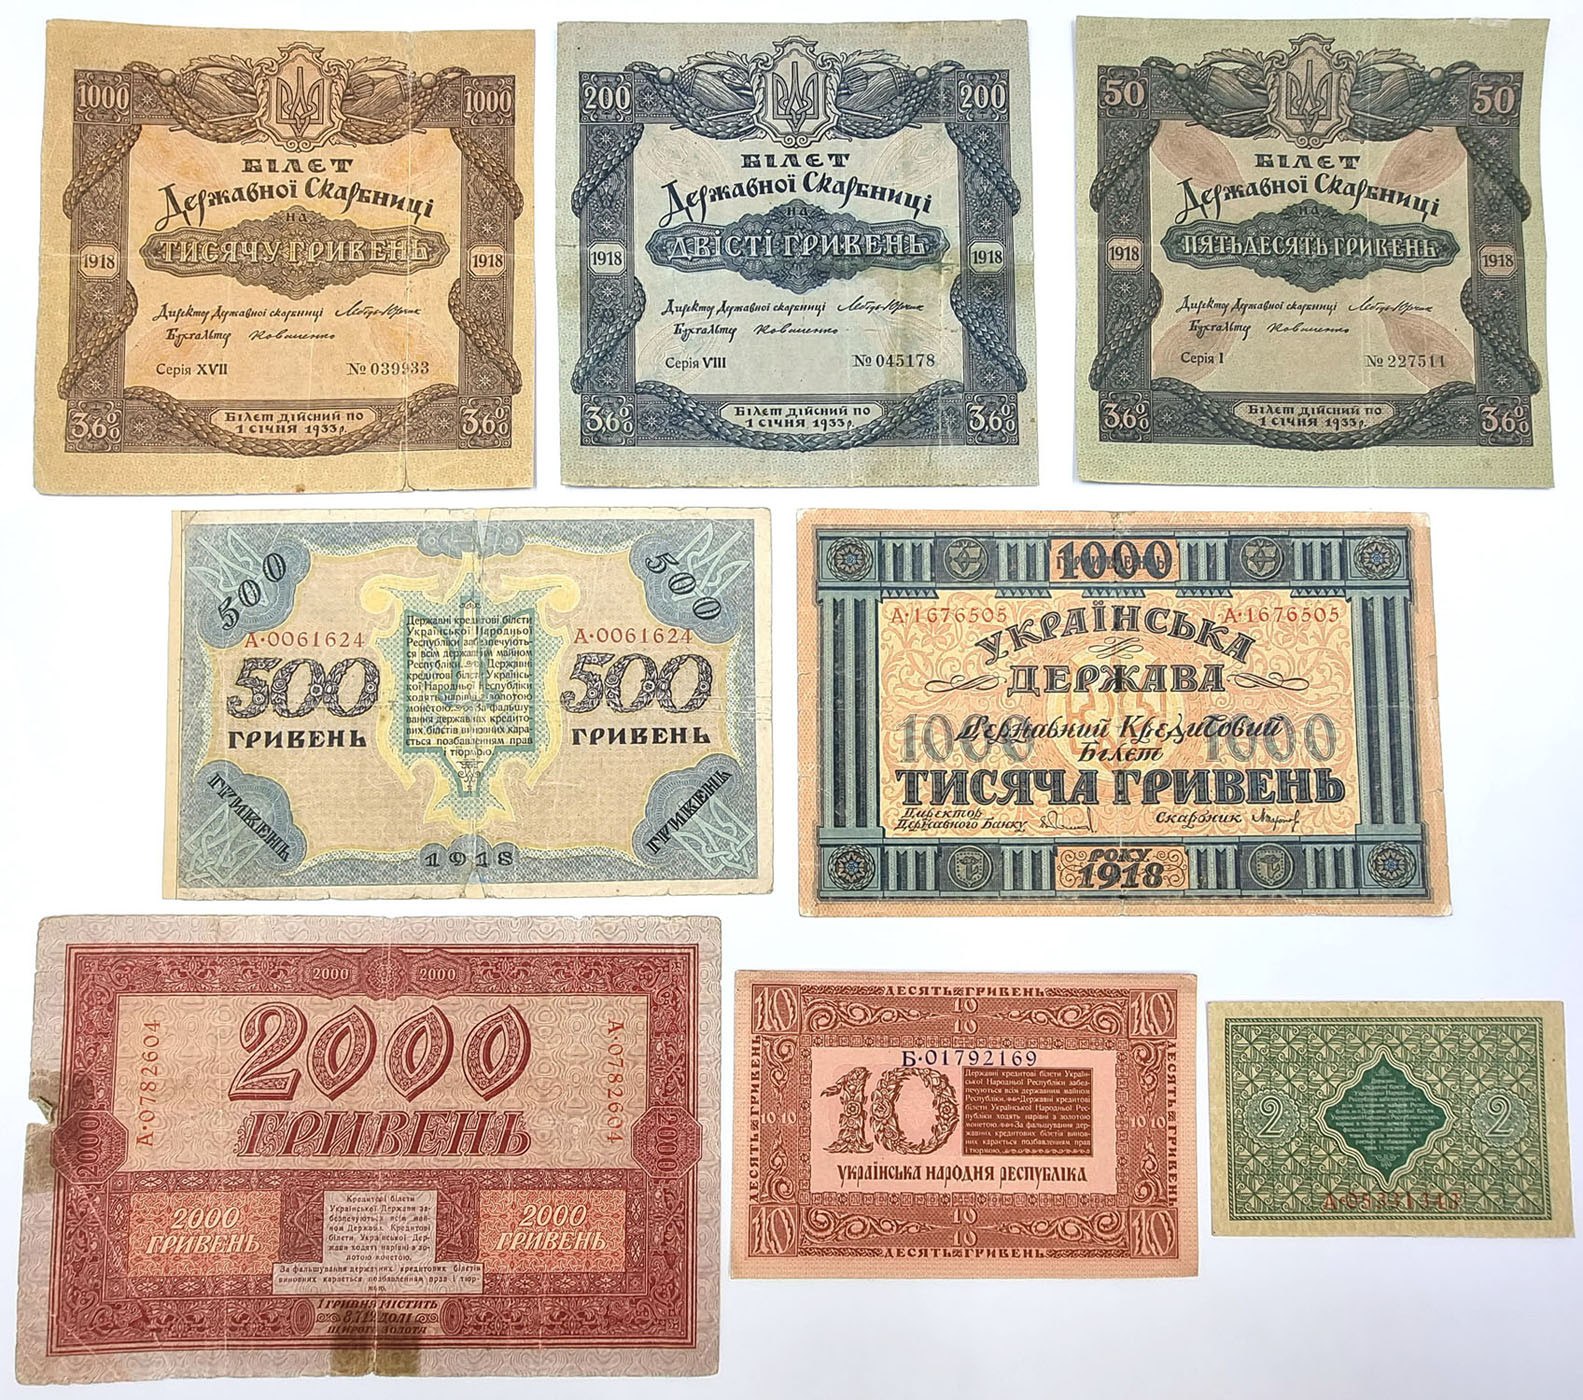 Ukraina, banknoty, papiery wartościowe, zestaw 8 sztuk